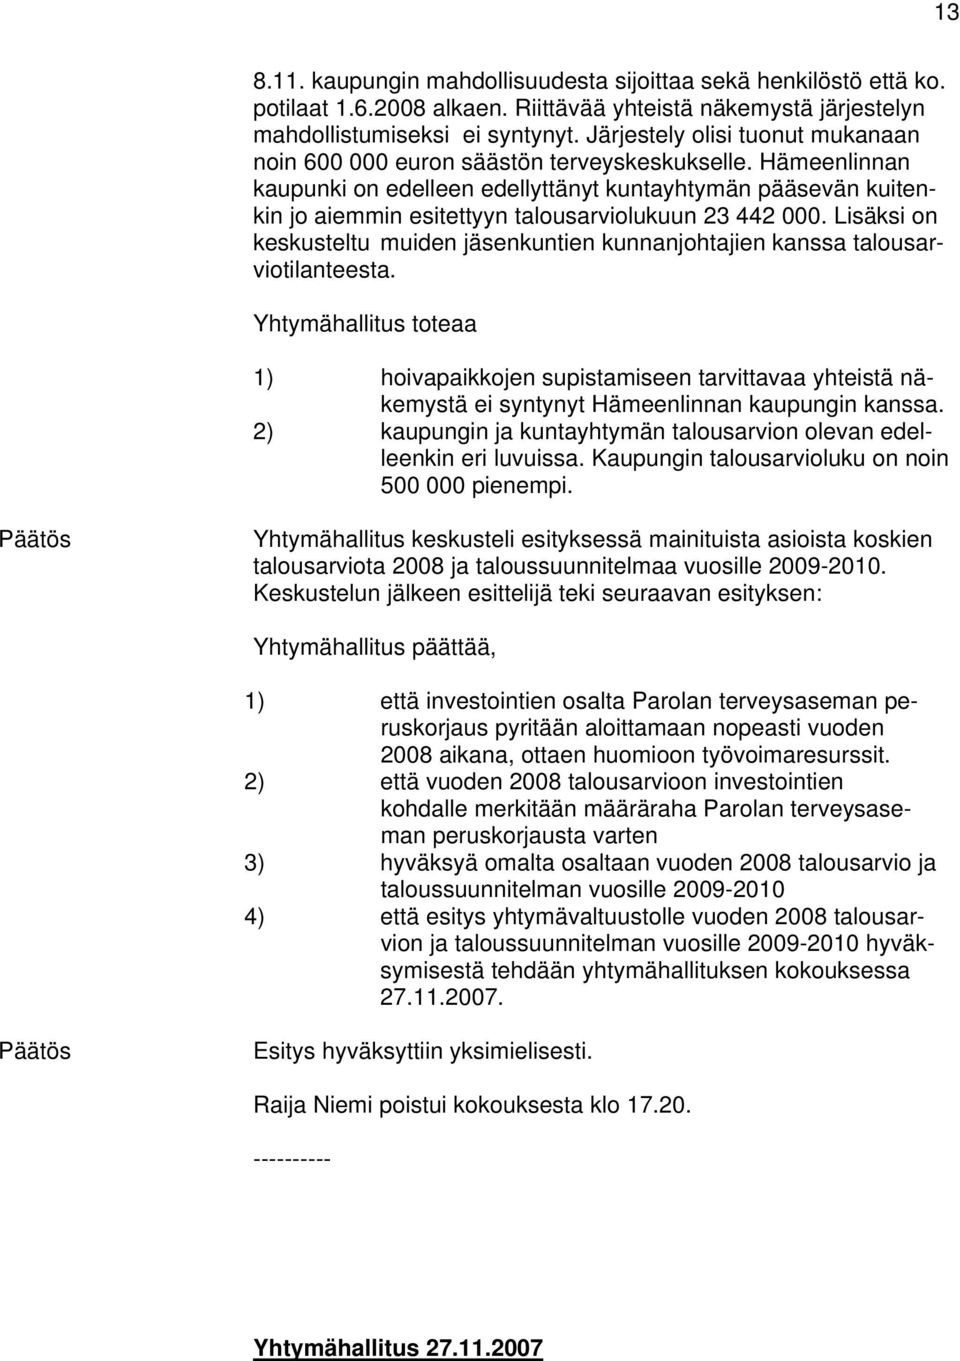 Hämeenlinnan kaupunki on edelleen edellyttänyt kuntayhtymän pääsevän kuitenkin jo aiemmin esitettyyn talousarviolukuun 23 442 000.